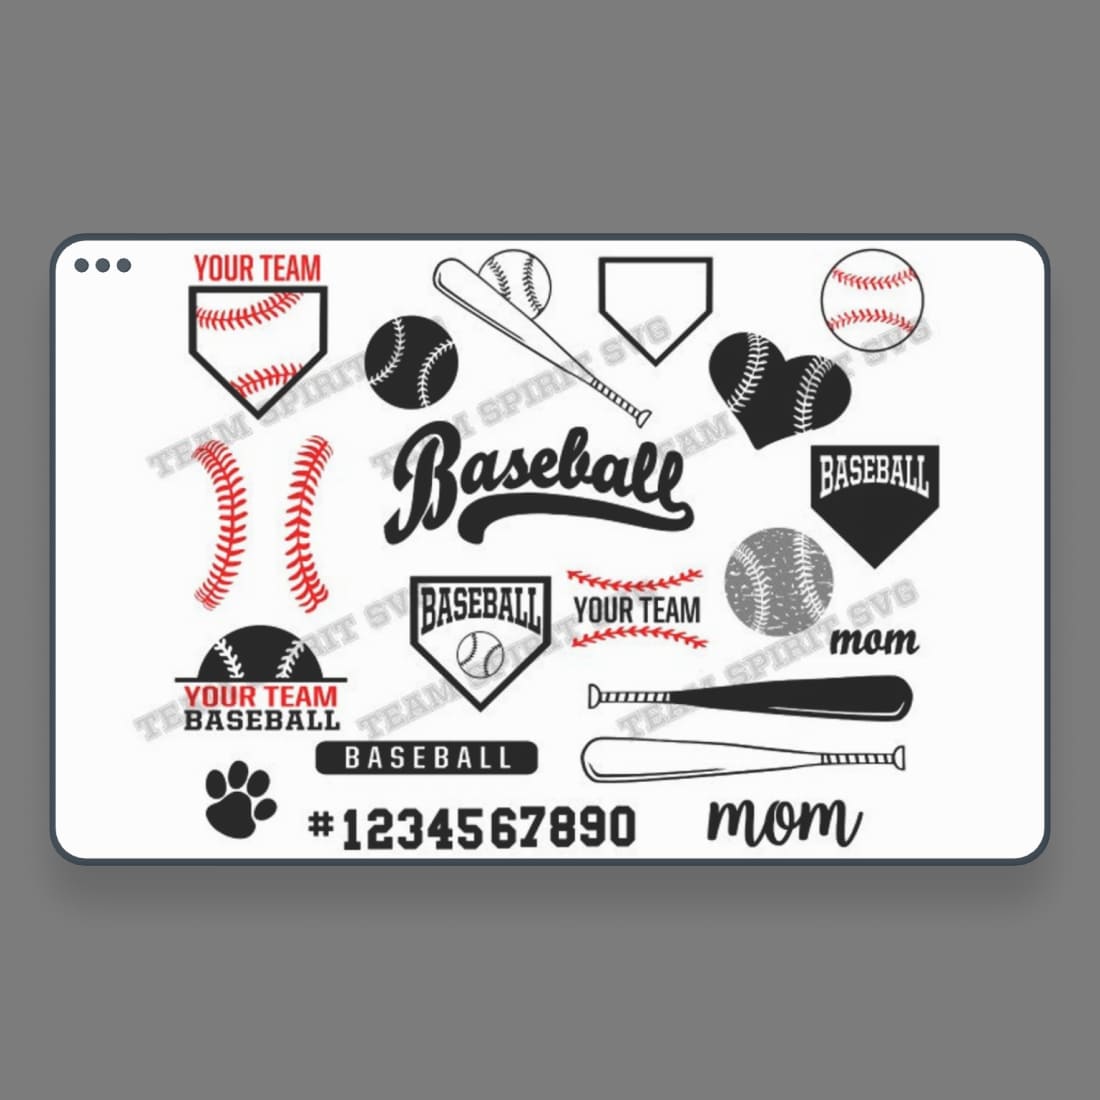 Ultimate Baseball SVG Pack cover.